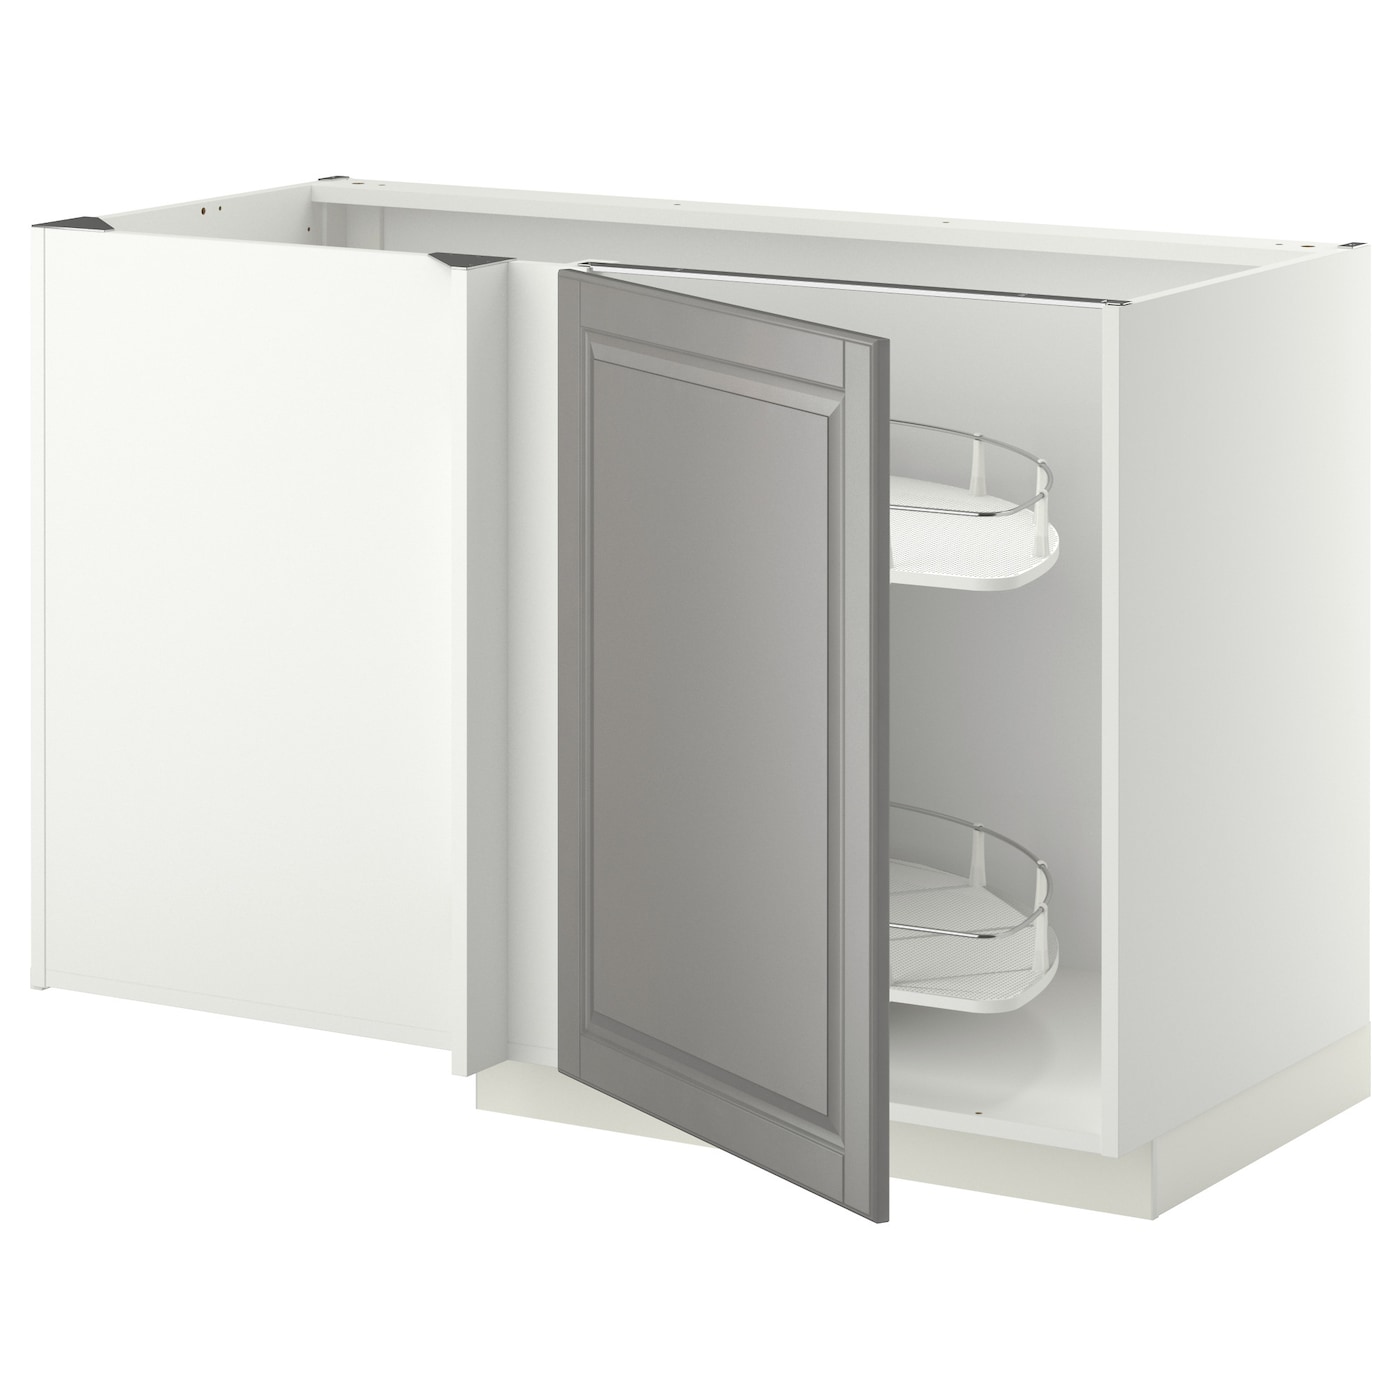 Напольный кухонный шкаф  - IKEA METOD, 88x67,5x127,5см, белый/светло-серый, МЕТОД ИКЕА